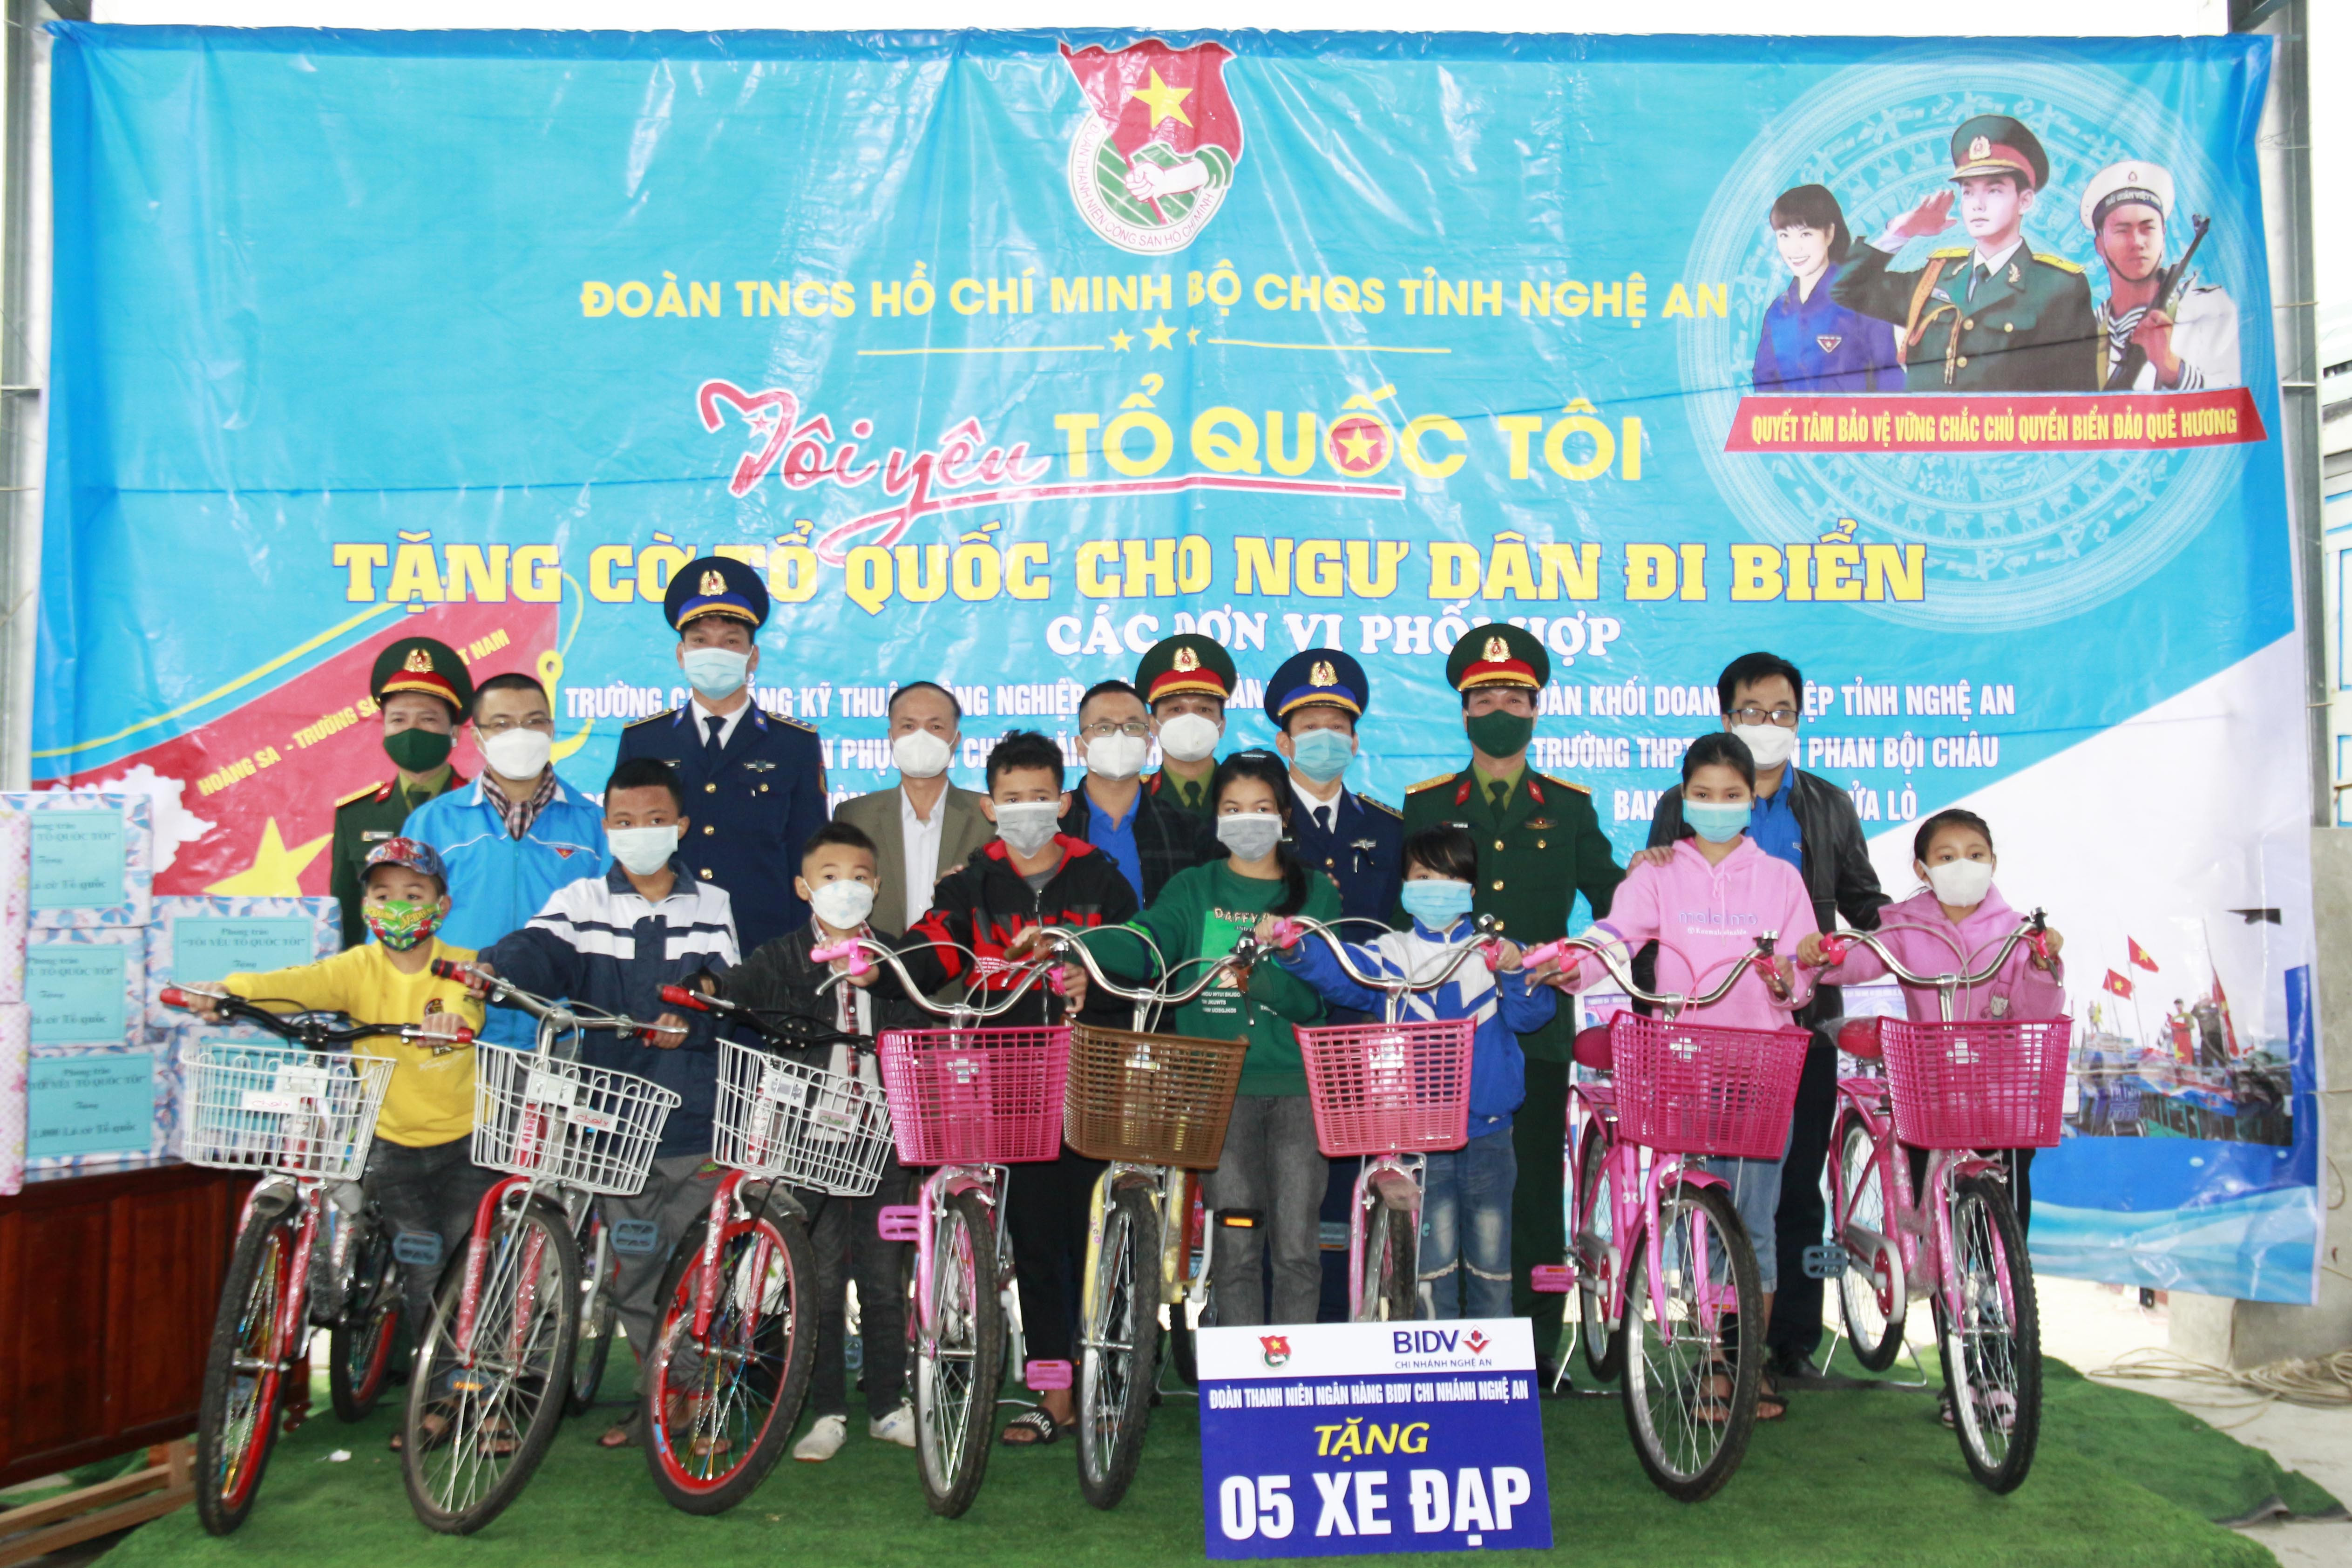  Đoàn Thanh niên Bộ CHQS tỉnh Nghệ An cùng các đơn vị kết nghĩa trao xe đạp cho các em học sinh nghèo vượt khó học giỏi